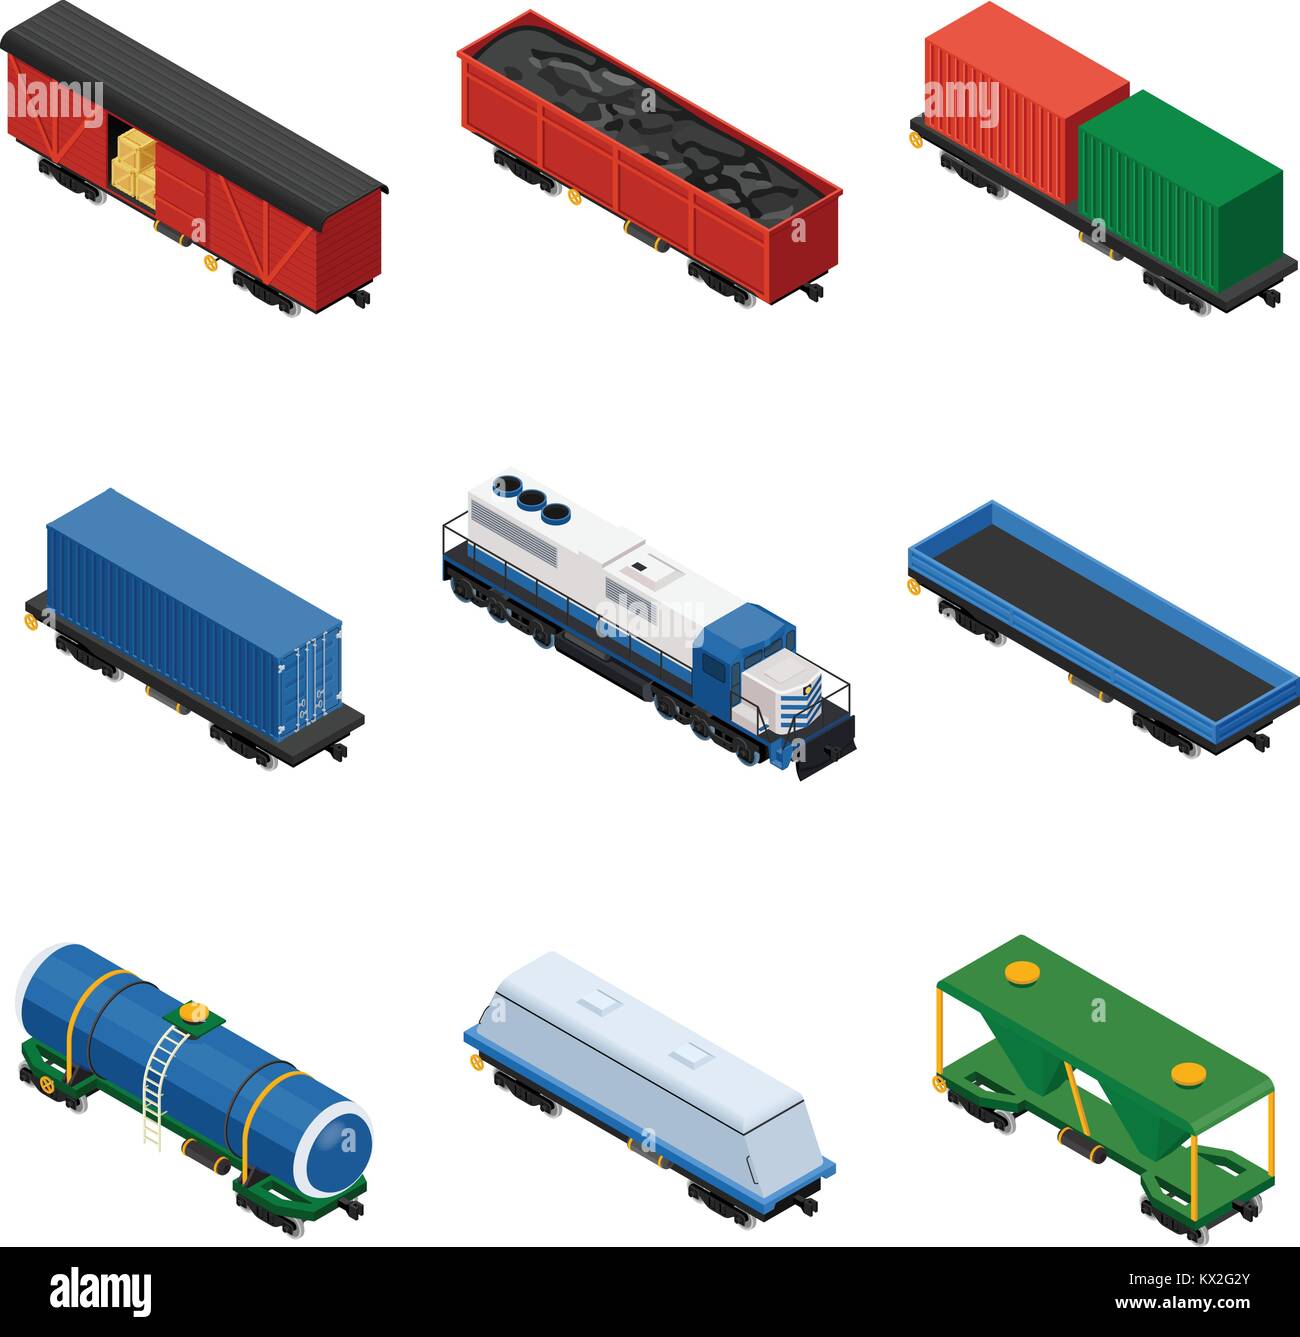 Treni set isometrica dei treni merci costituito da locomotive, piattaforme per il trasporto di contenitori, carri coperti, cisterne e vagoni ferroviari Illustrazione Vettoriale